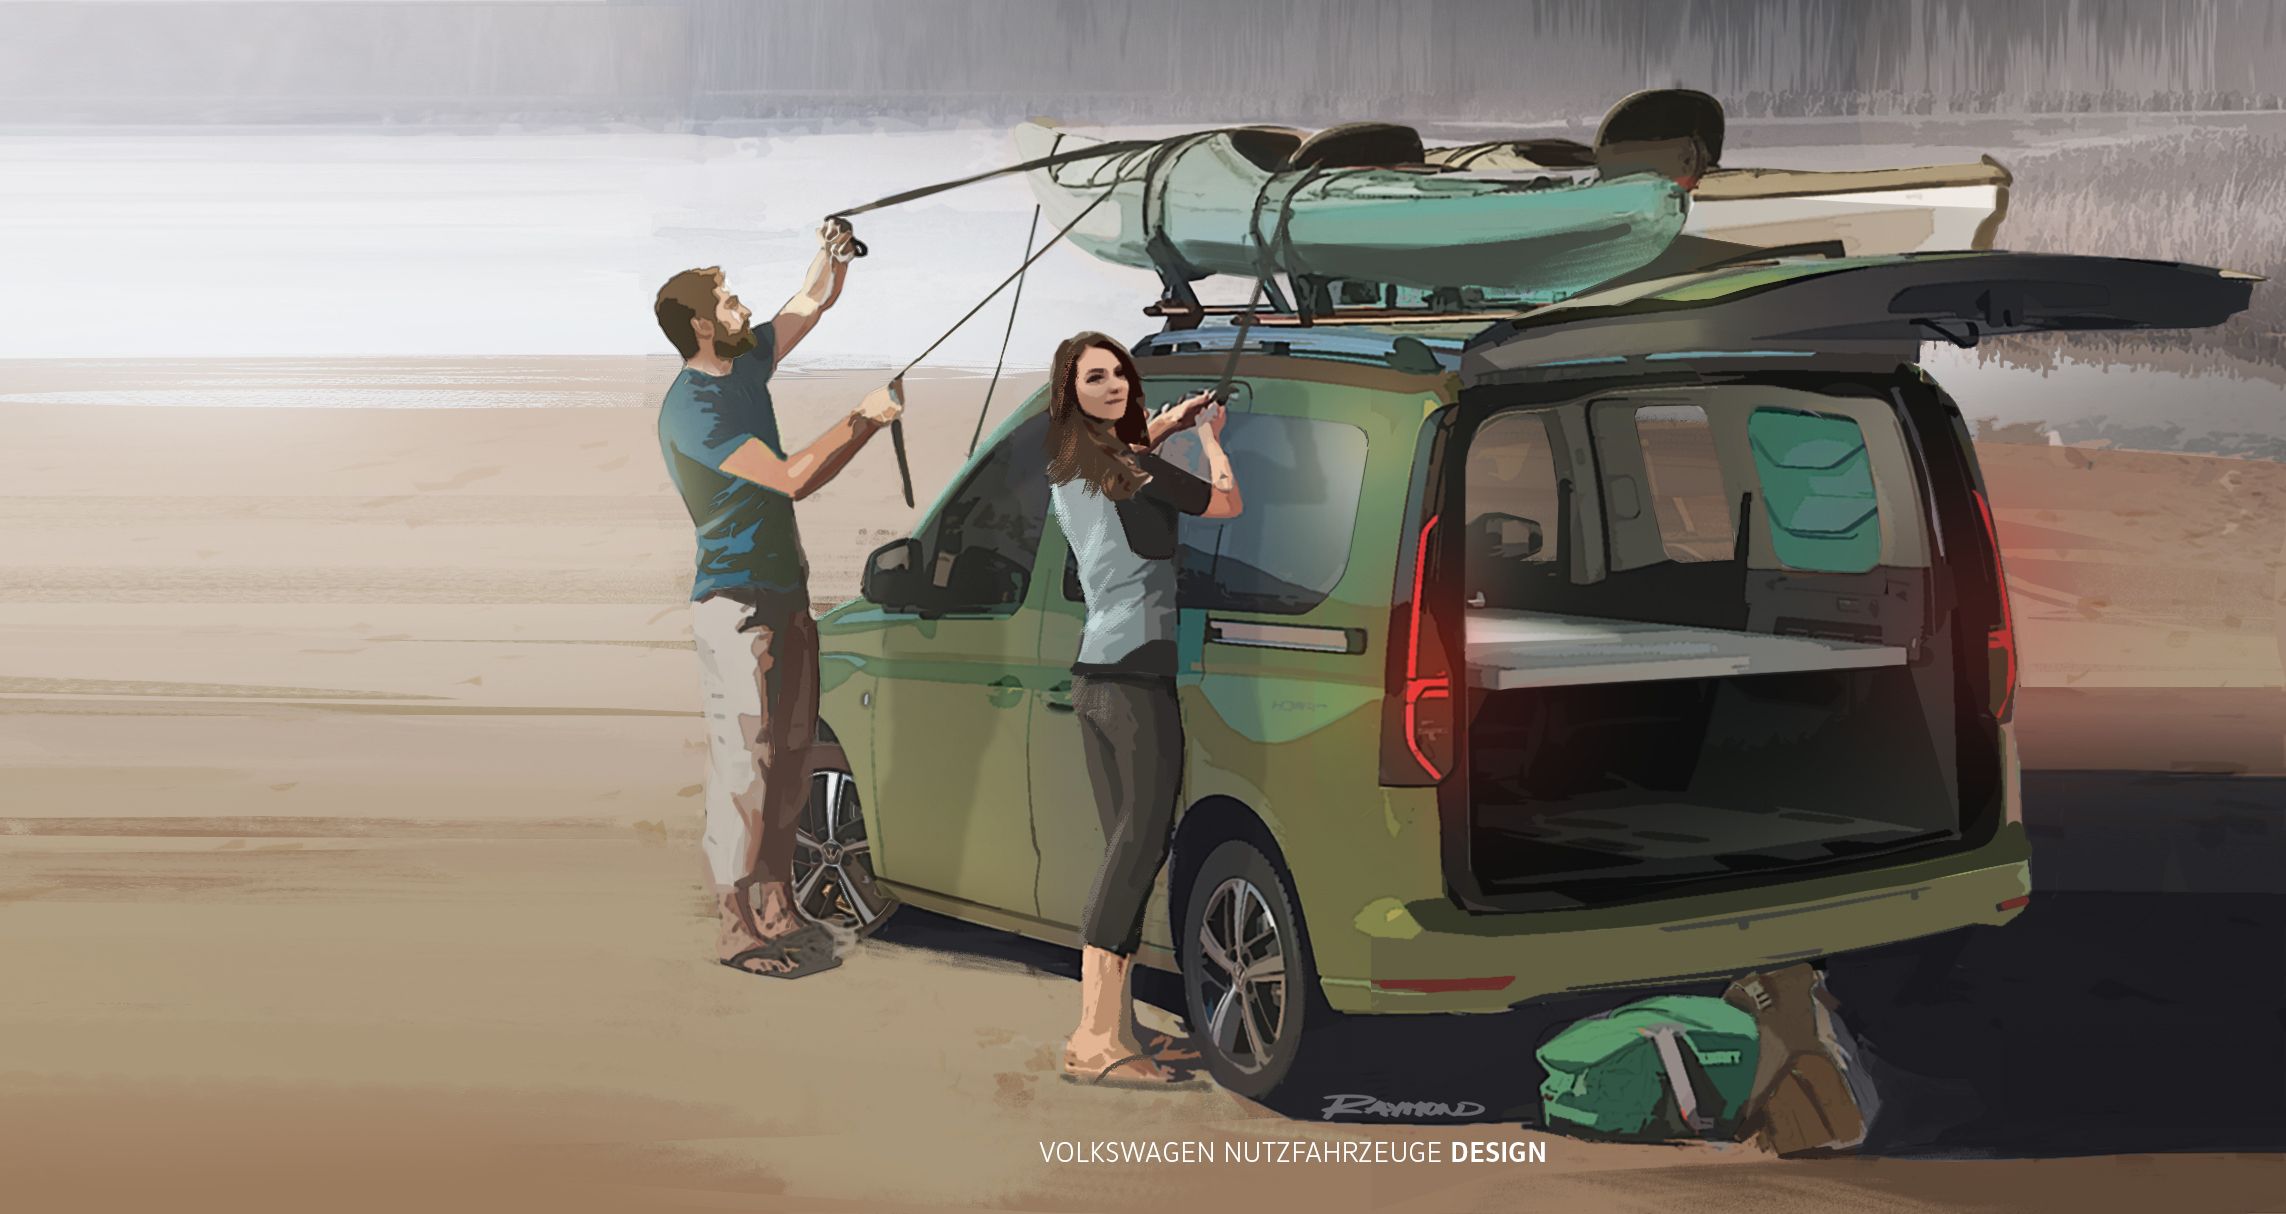 Volkswagen Nutzfahrzeuge zeigt erste Bilder vom neuen Mini-Camper